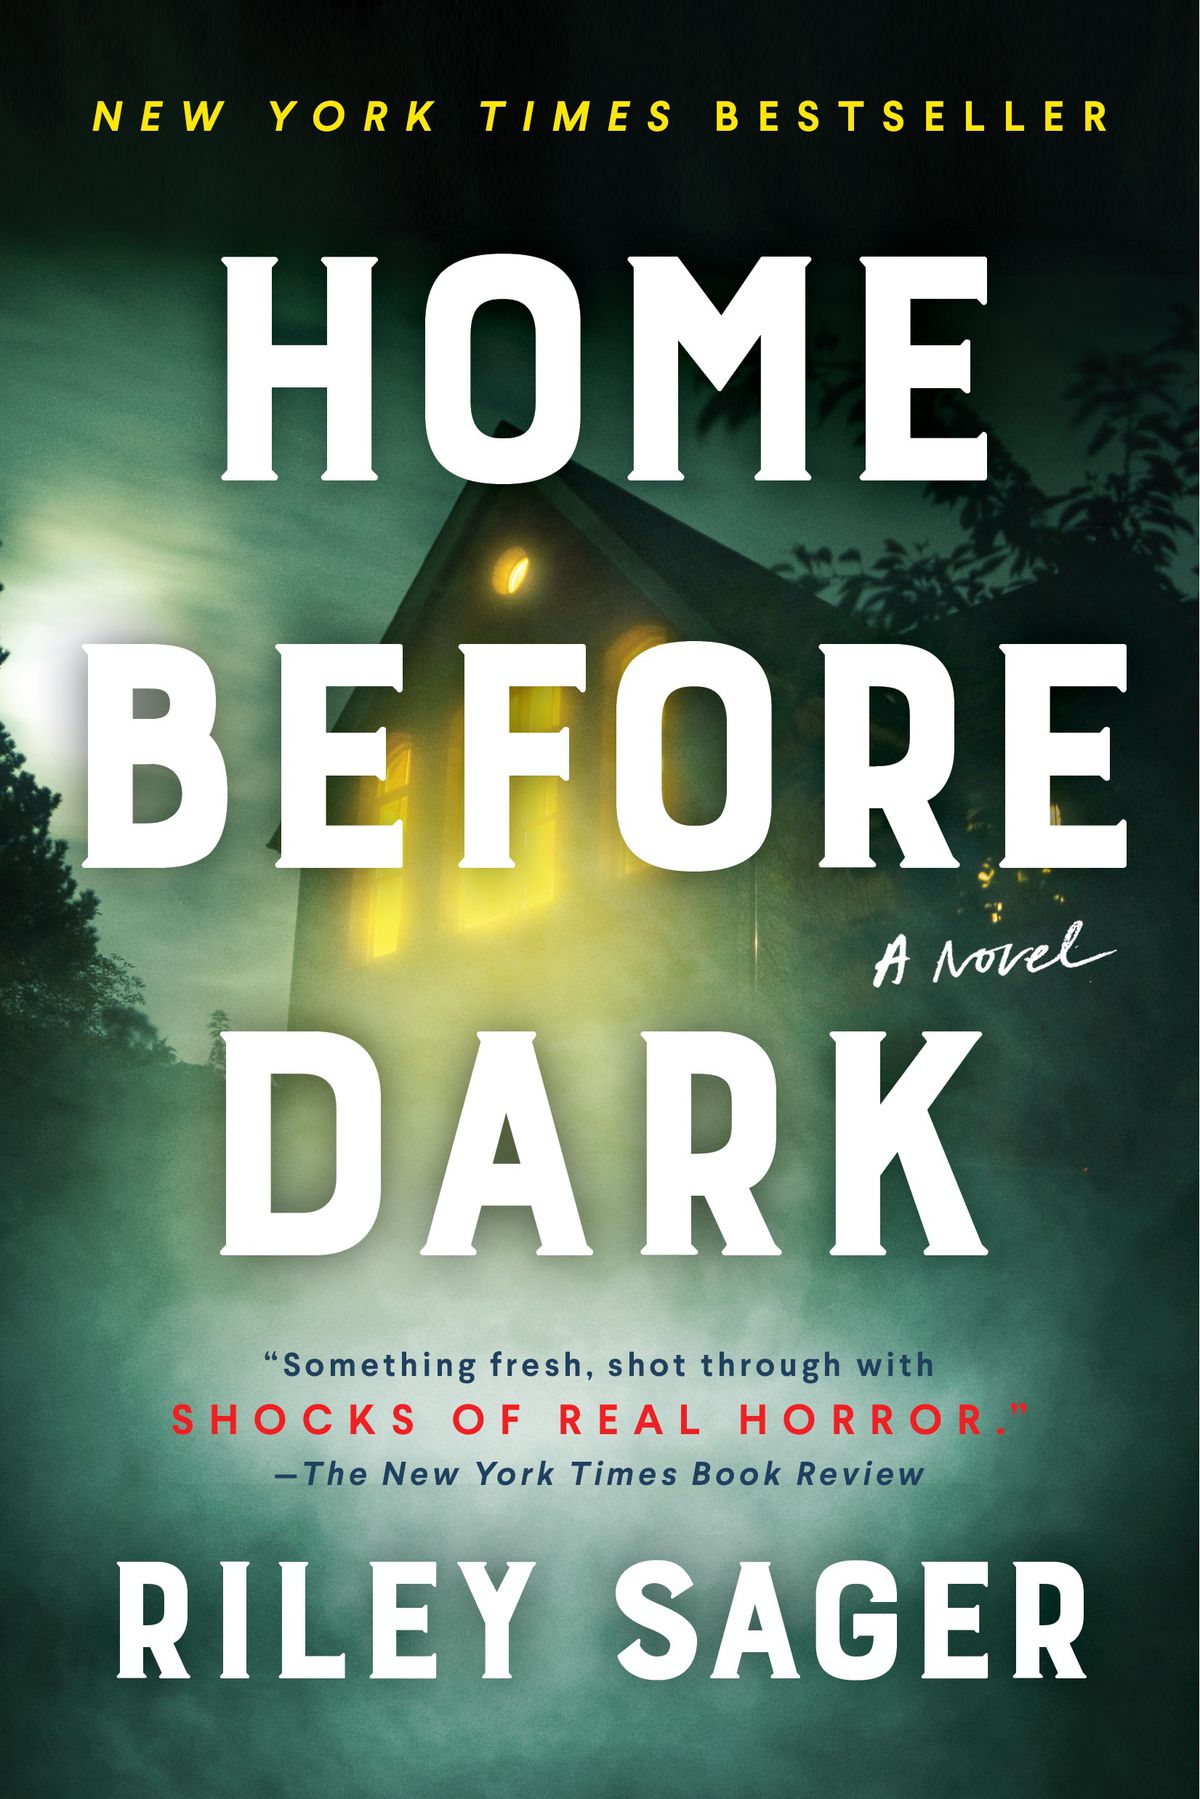 Immagine di copertina di Home Before Dark di Riley Sager, che mostra una casa con le luci accese oscurate dalla nebbia.